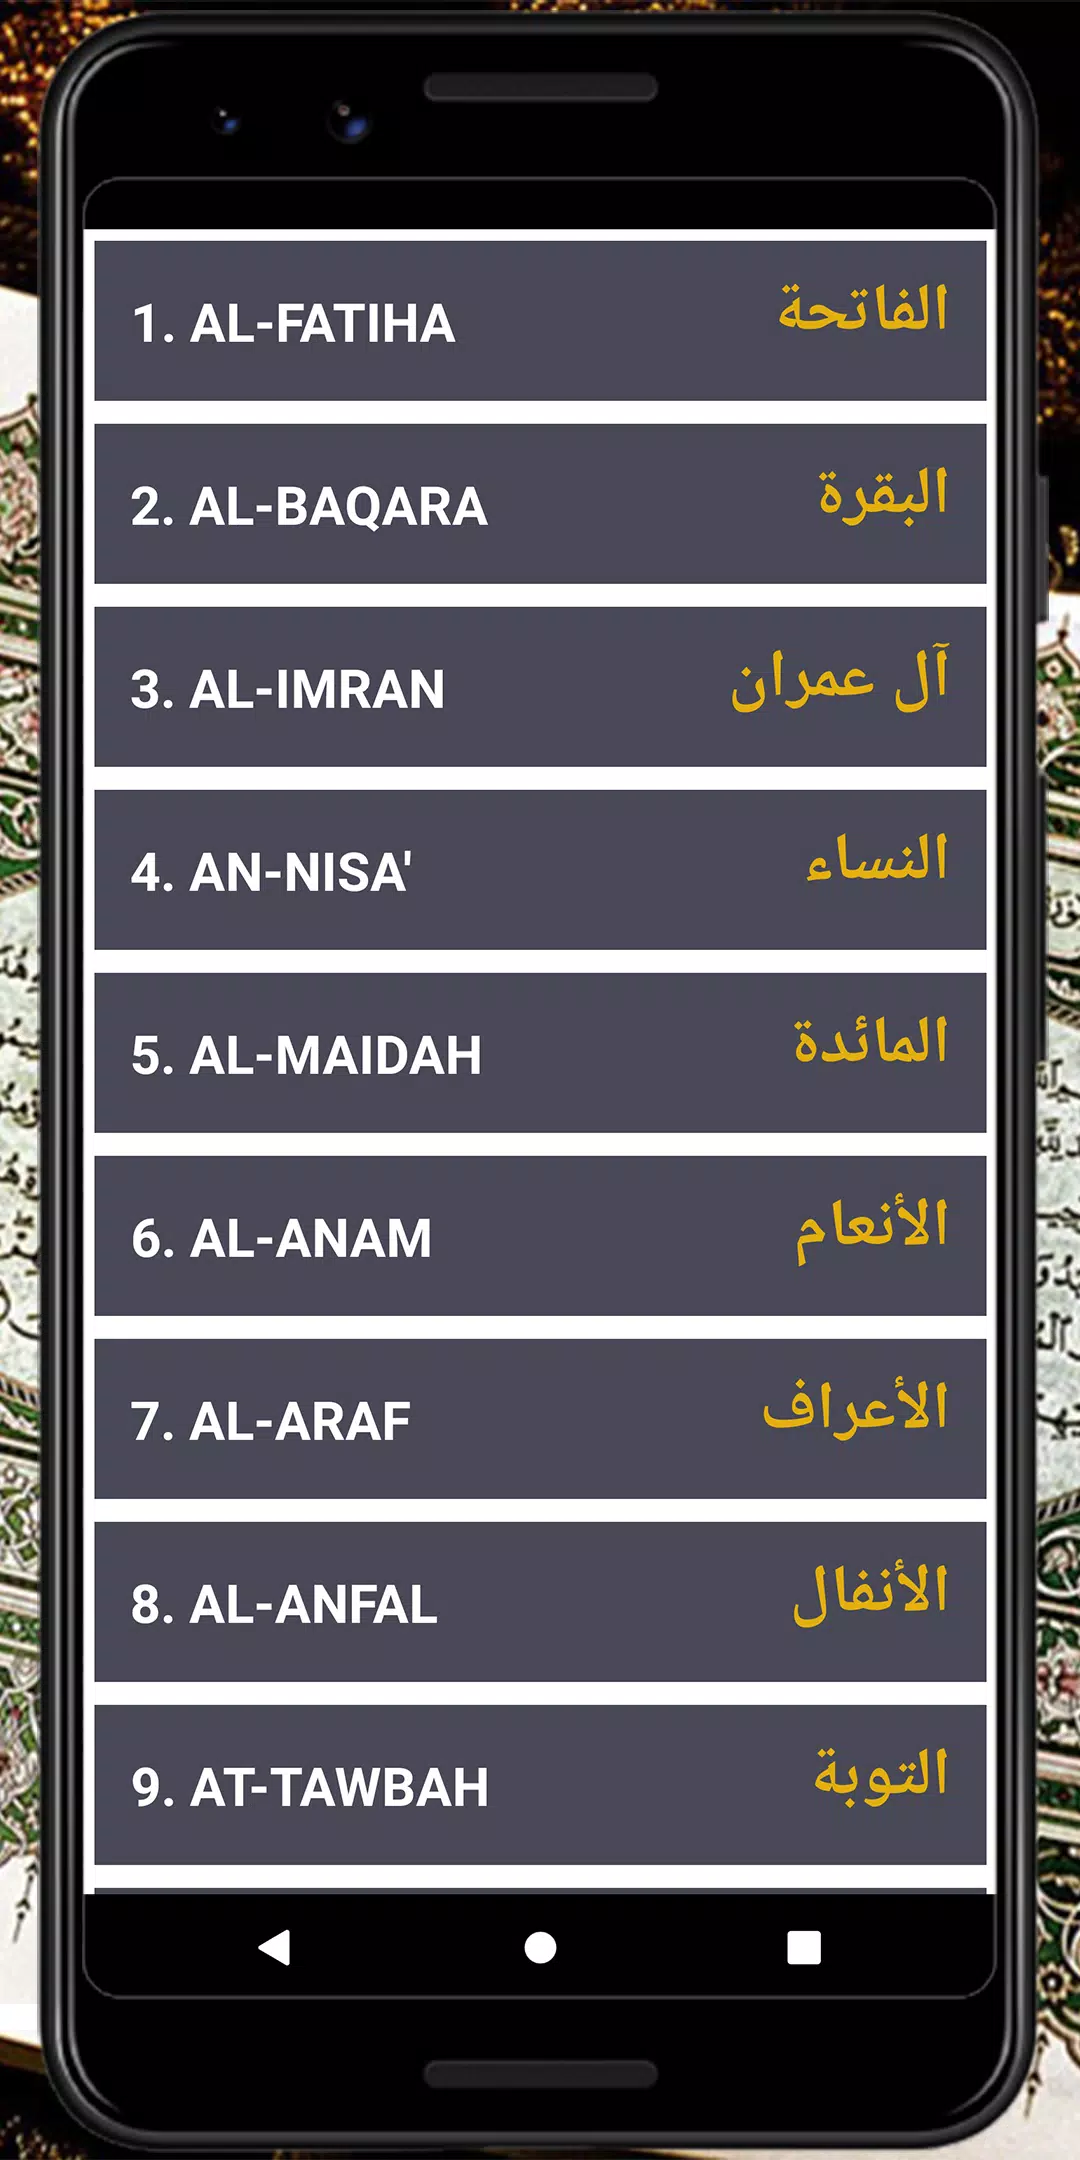 لقرآن الكريم - Arabic Quran/Koran in Arabic APK for Android Download